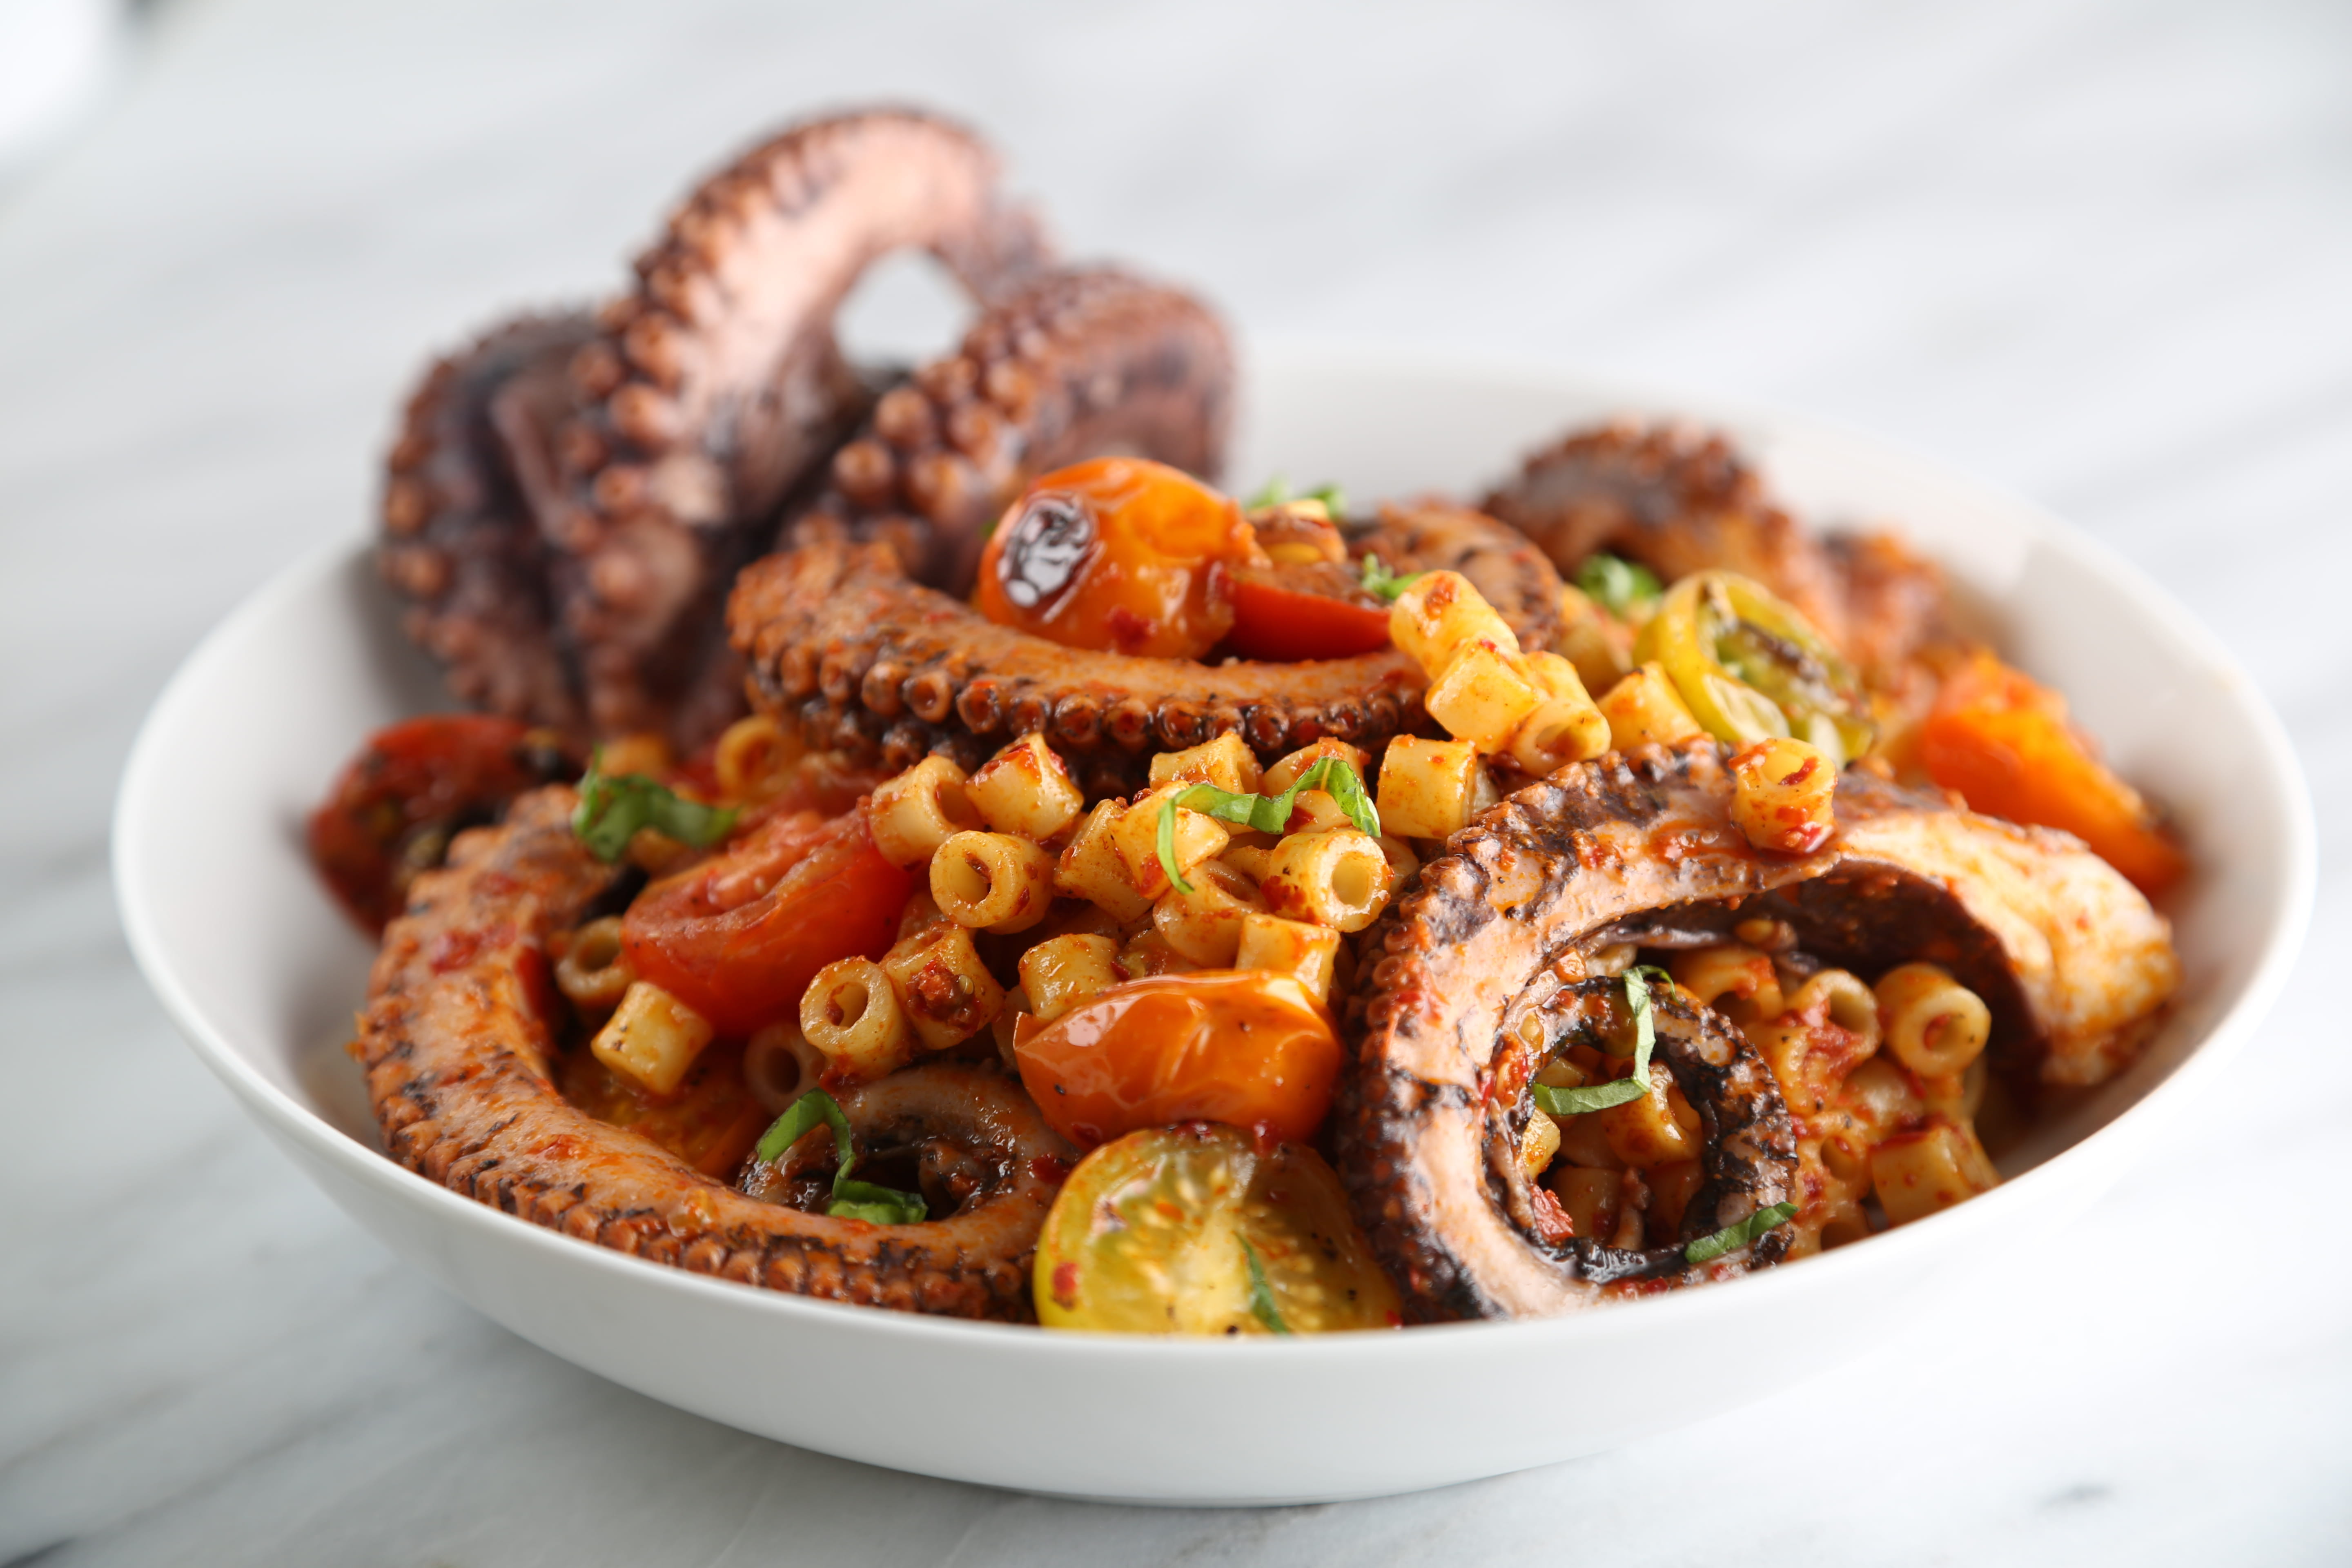 Octopus Ditali Pasta Salad with Nduja